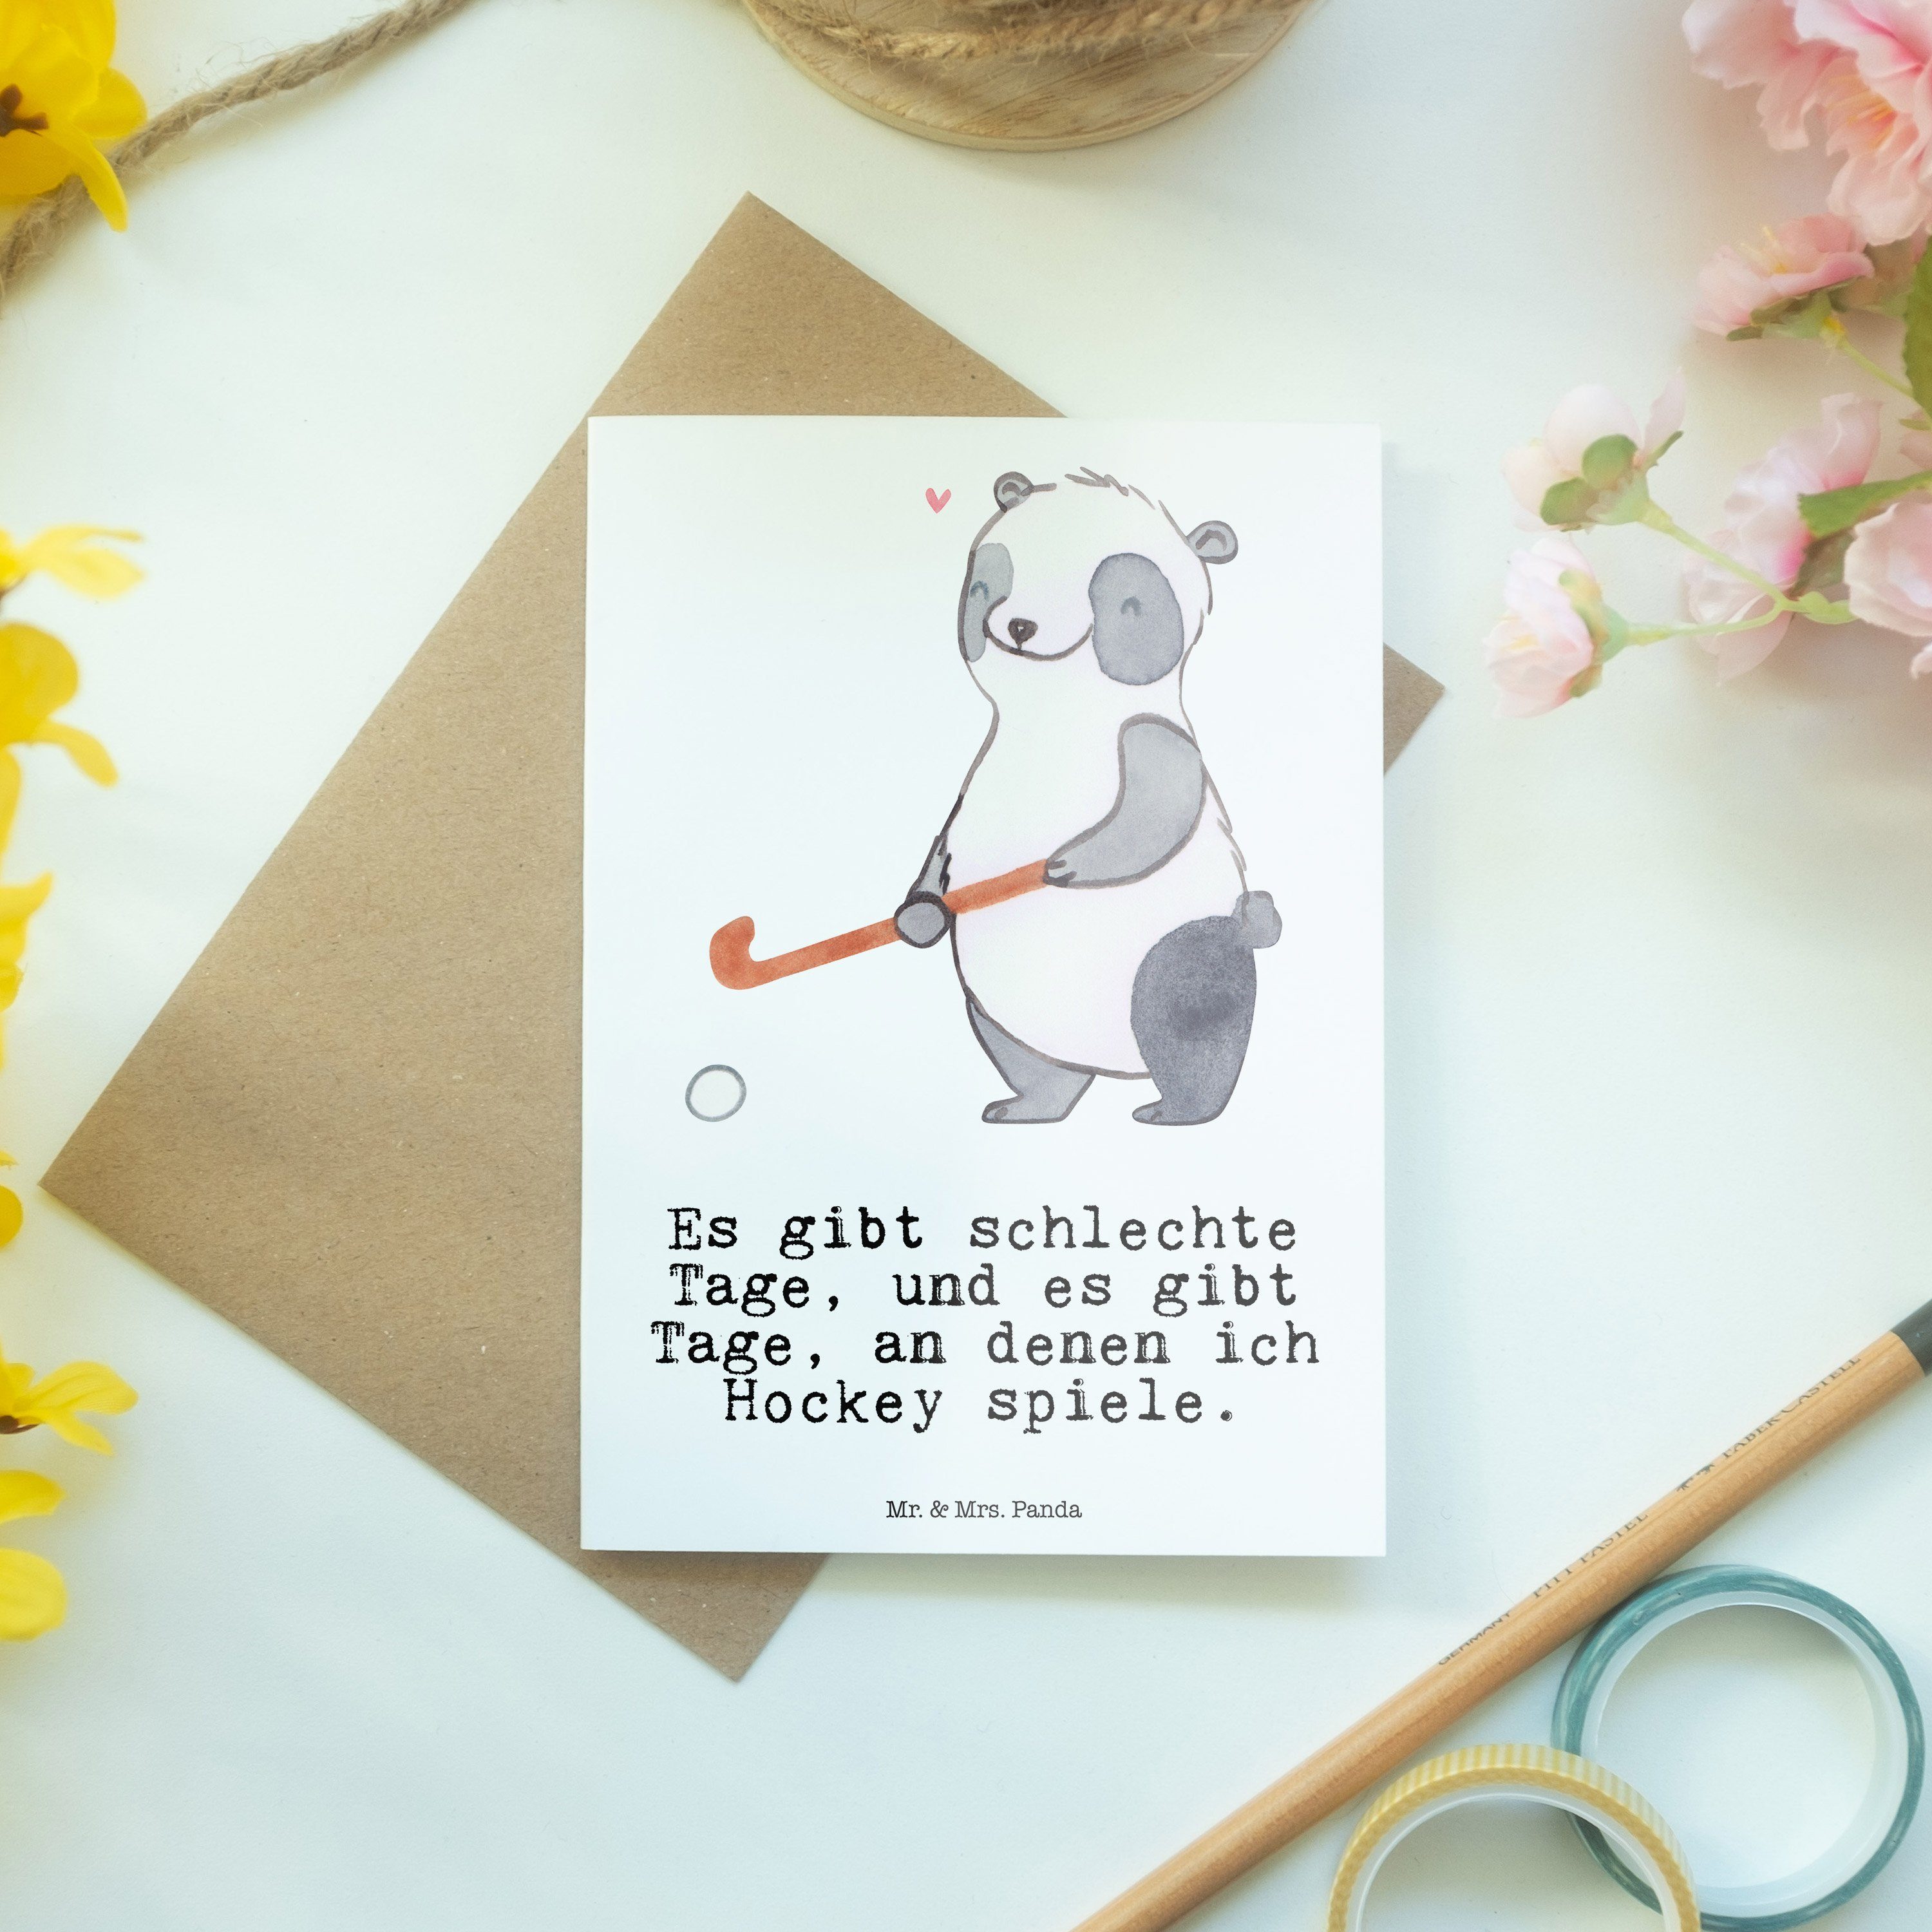 - Geschenk, Panda Mrs. Panda spielen Hockey Auszeichnung, Weiß & Mr. Grußkarte Sportler Tage -